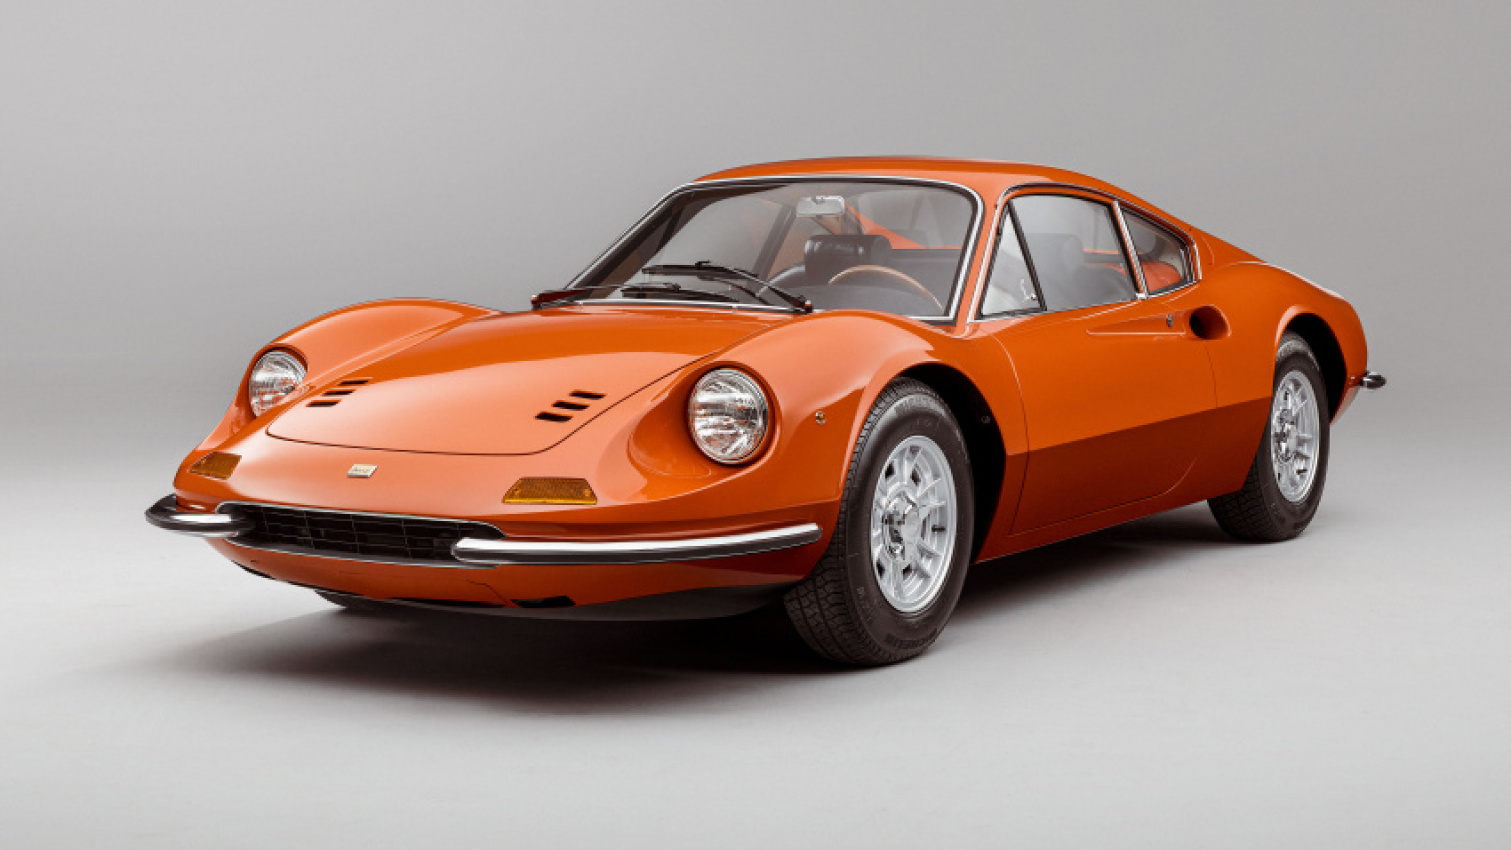 autos, cars, ferrari, retro, vnex, gaze upon this fully restored 1969 ferrari dino 246 gt